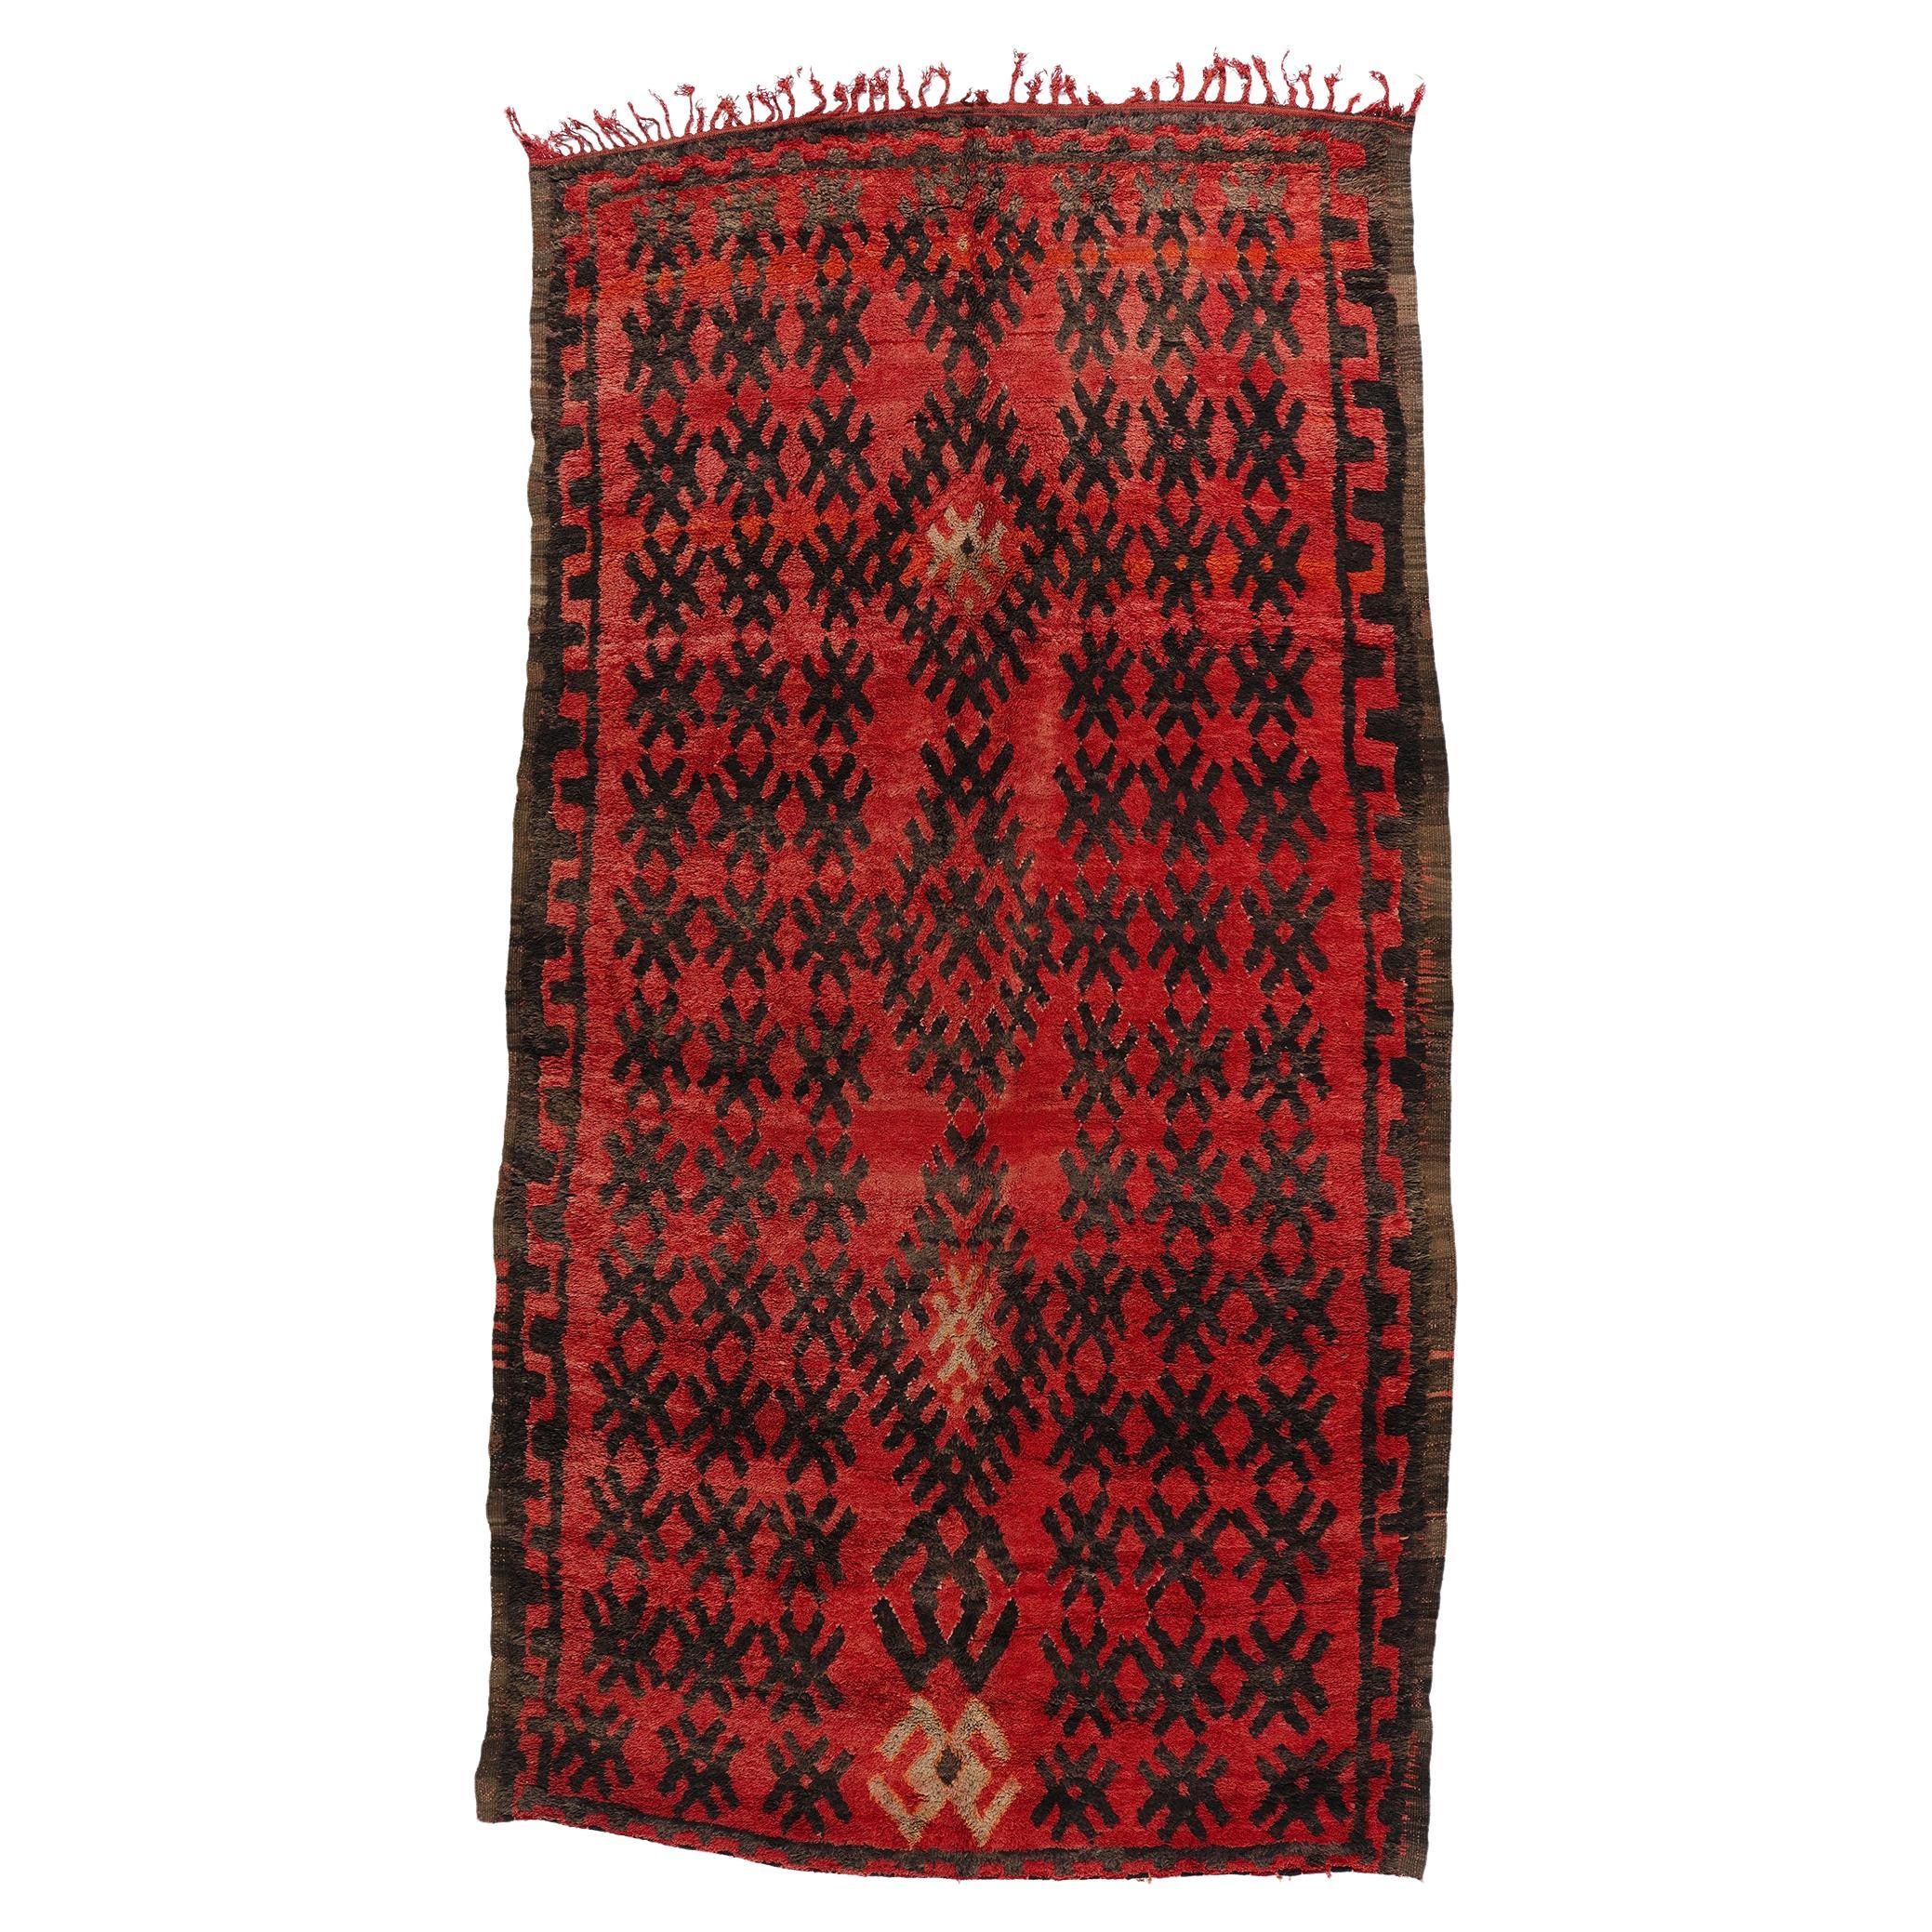 Marokkanischer roter Talsint-Teppich im Vintage-Stil, Stammeskunst-Enchantment trifft auf Midcentury Modern